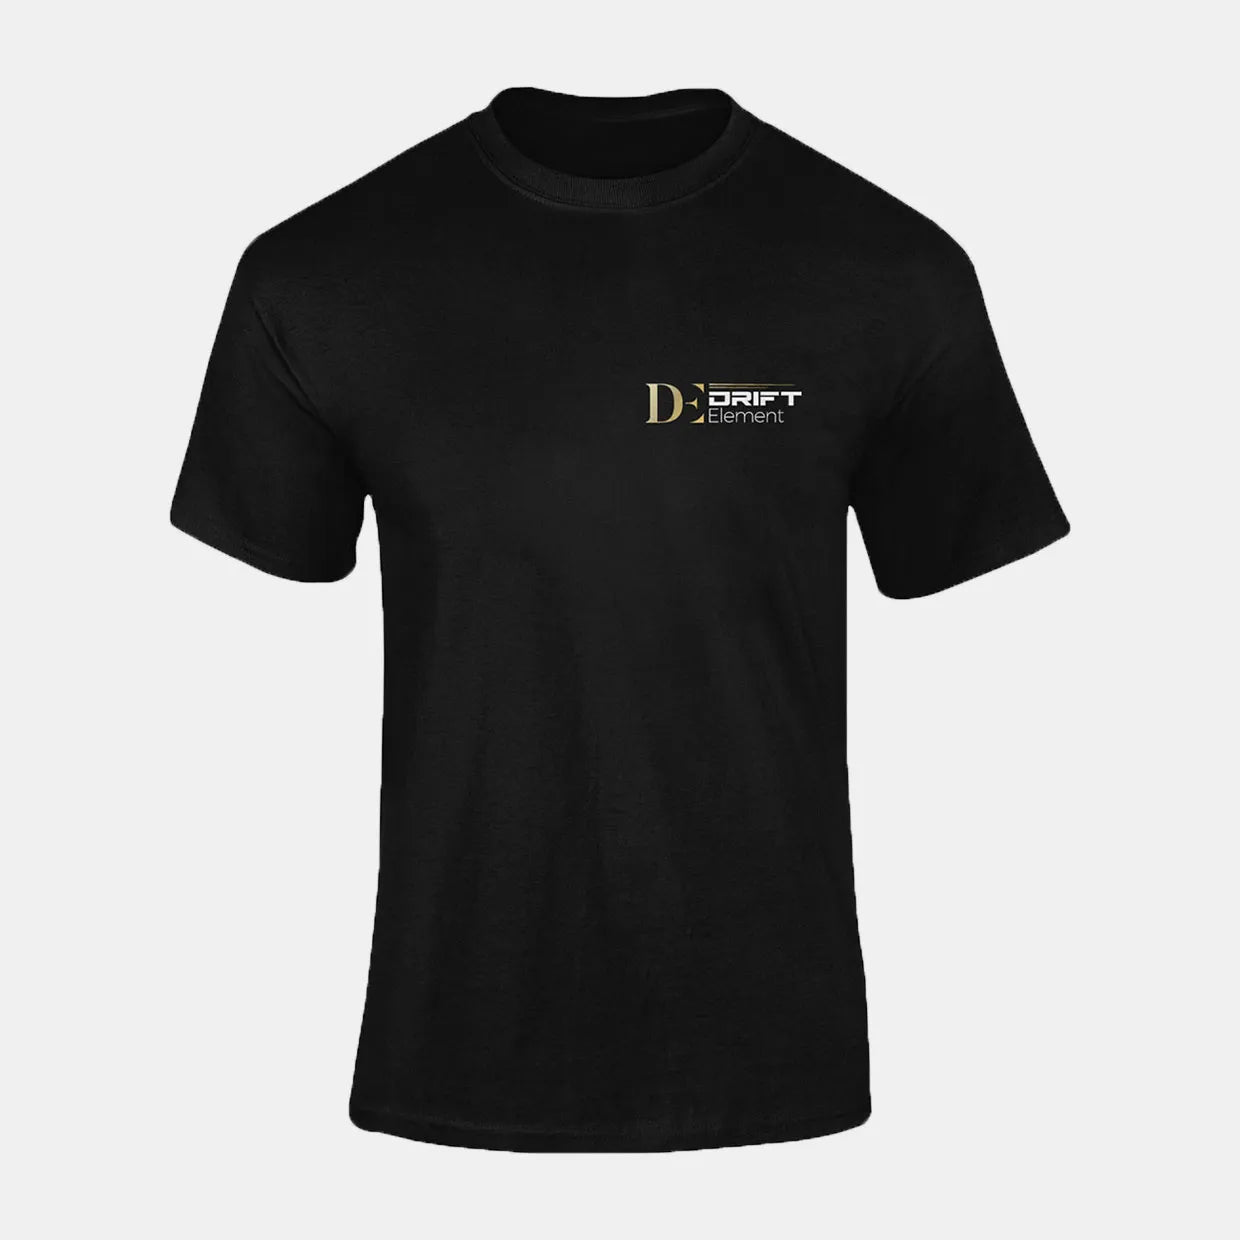 DriftElement Camiseta